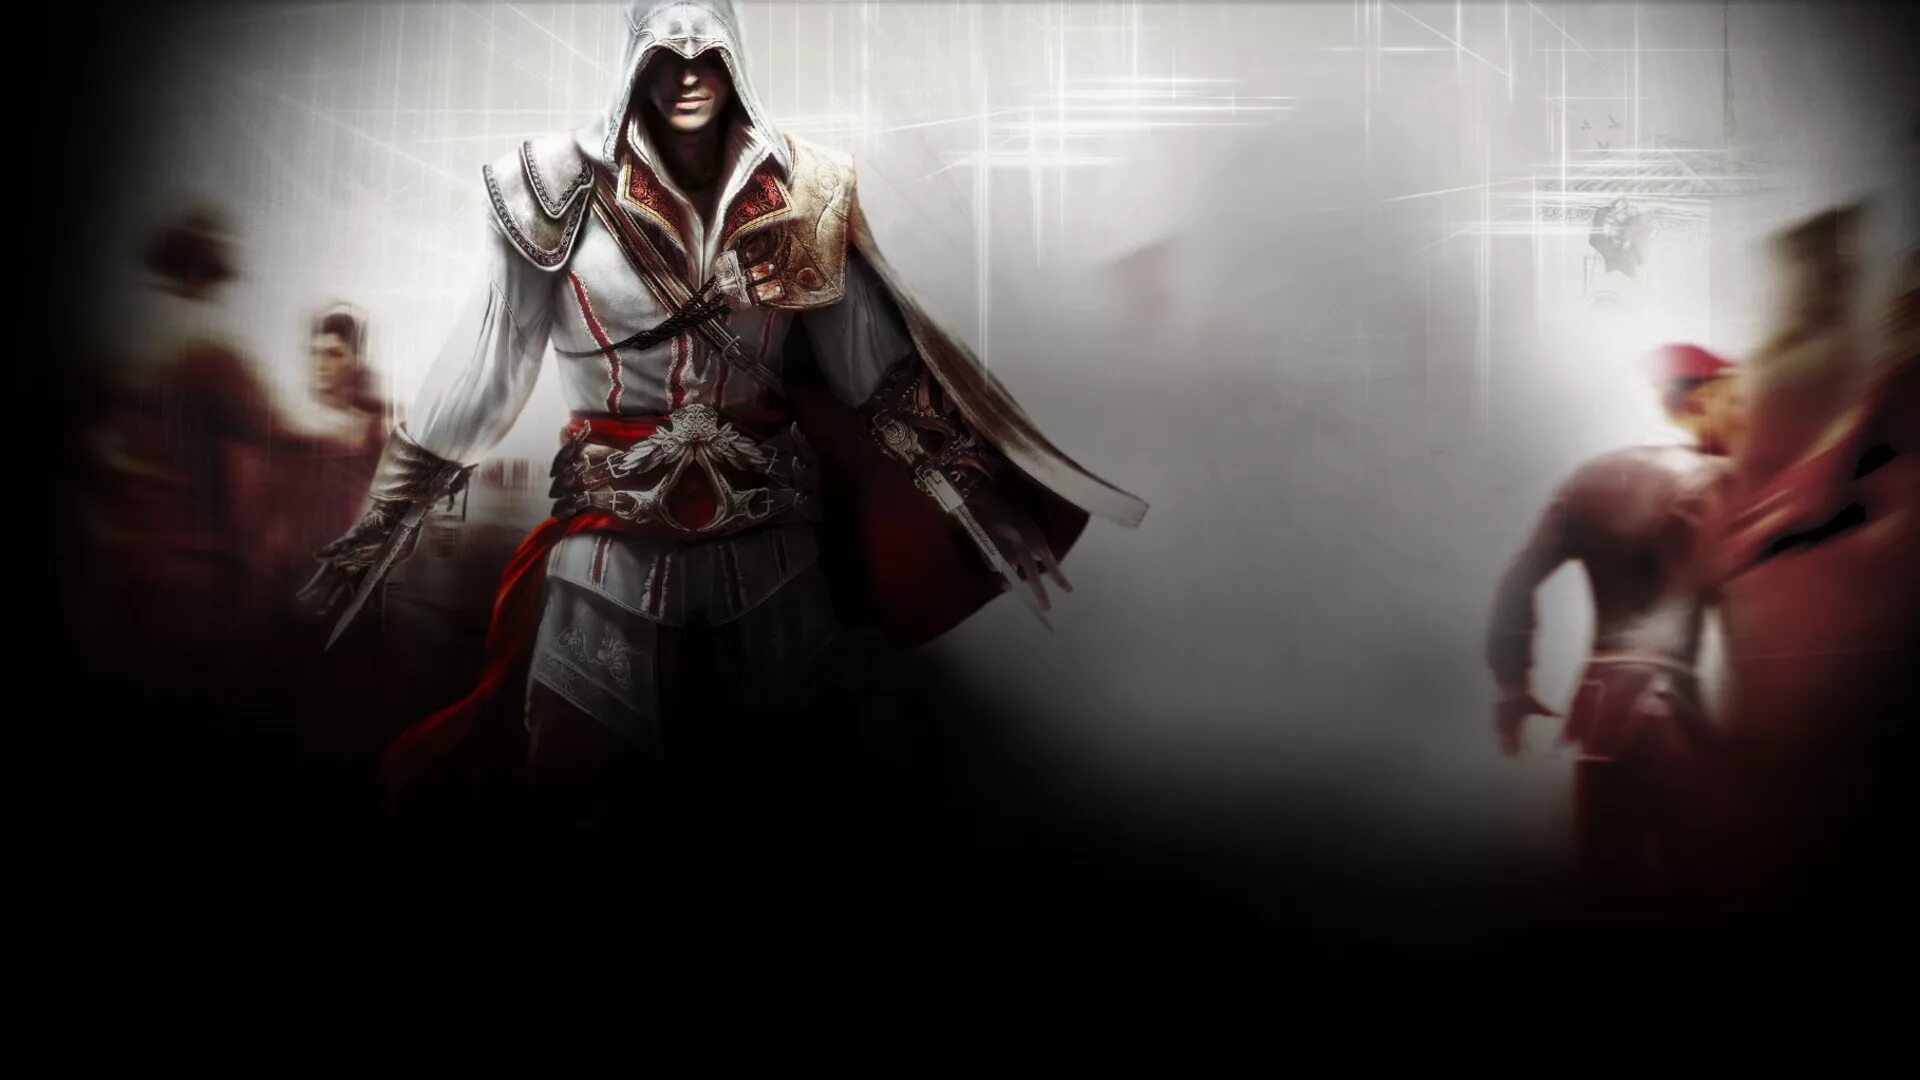 Дерева хранимого змеем. Ассасин Крид 2. Assassin's Creed 2 Brotherhood. Фон ассасин Крид 2. Assassin's Creed 2 обои.